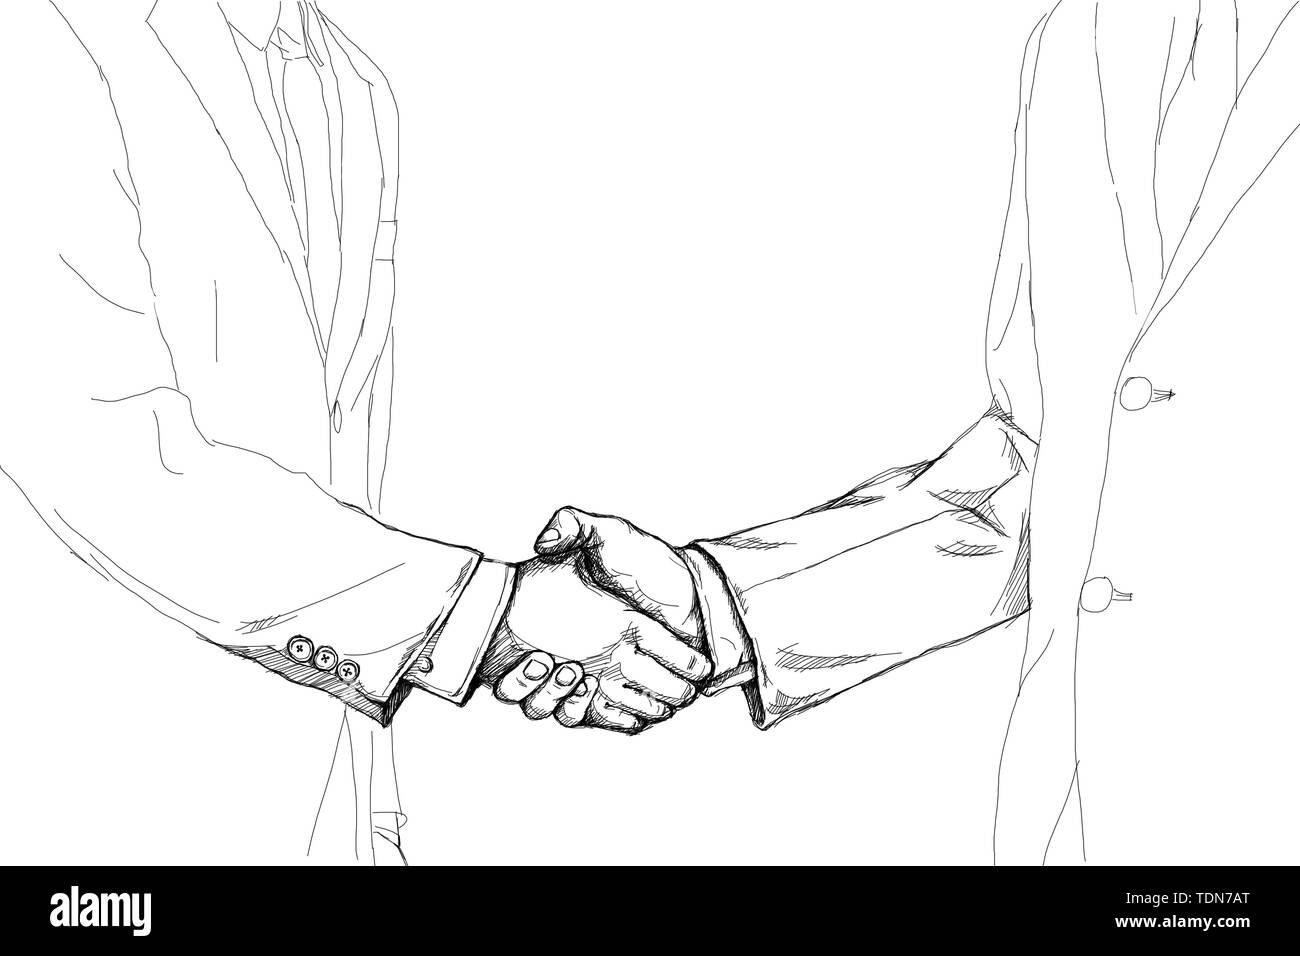 Disegno creativo sketch di due proprietari agitando la mano gli uni con gli altri per fare un affare dopo l'accordo isolati su sfondo bianco Foto Stock